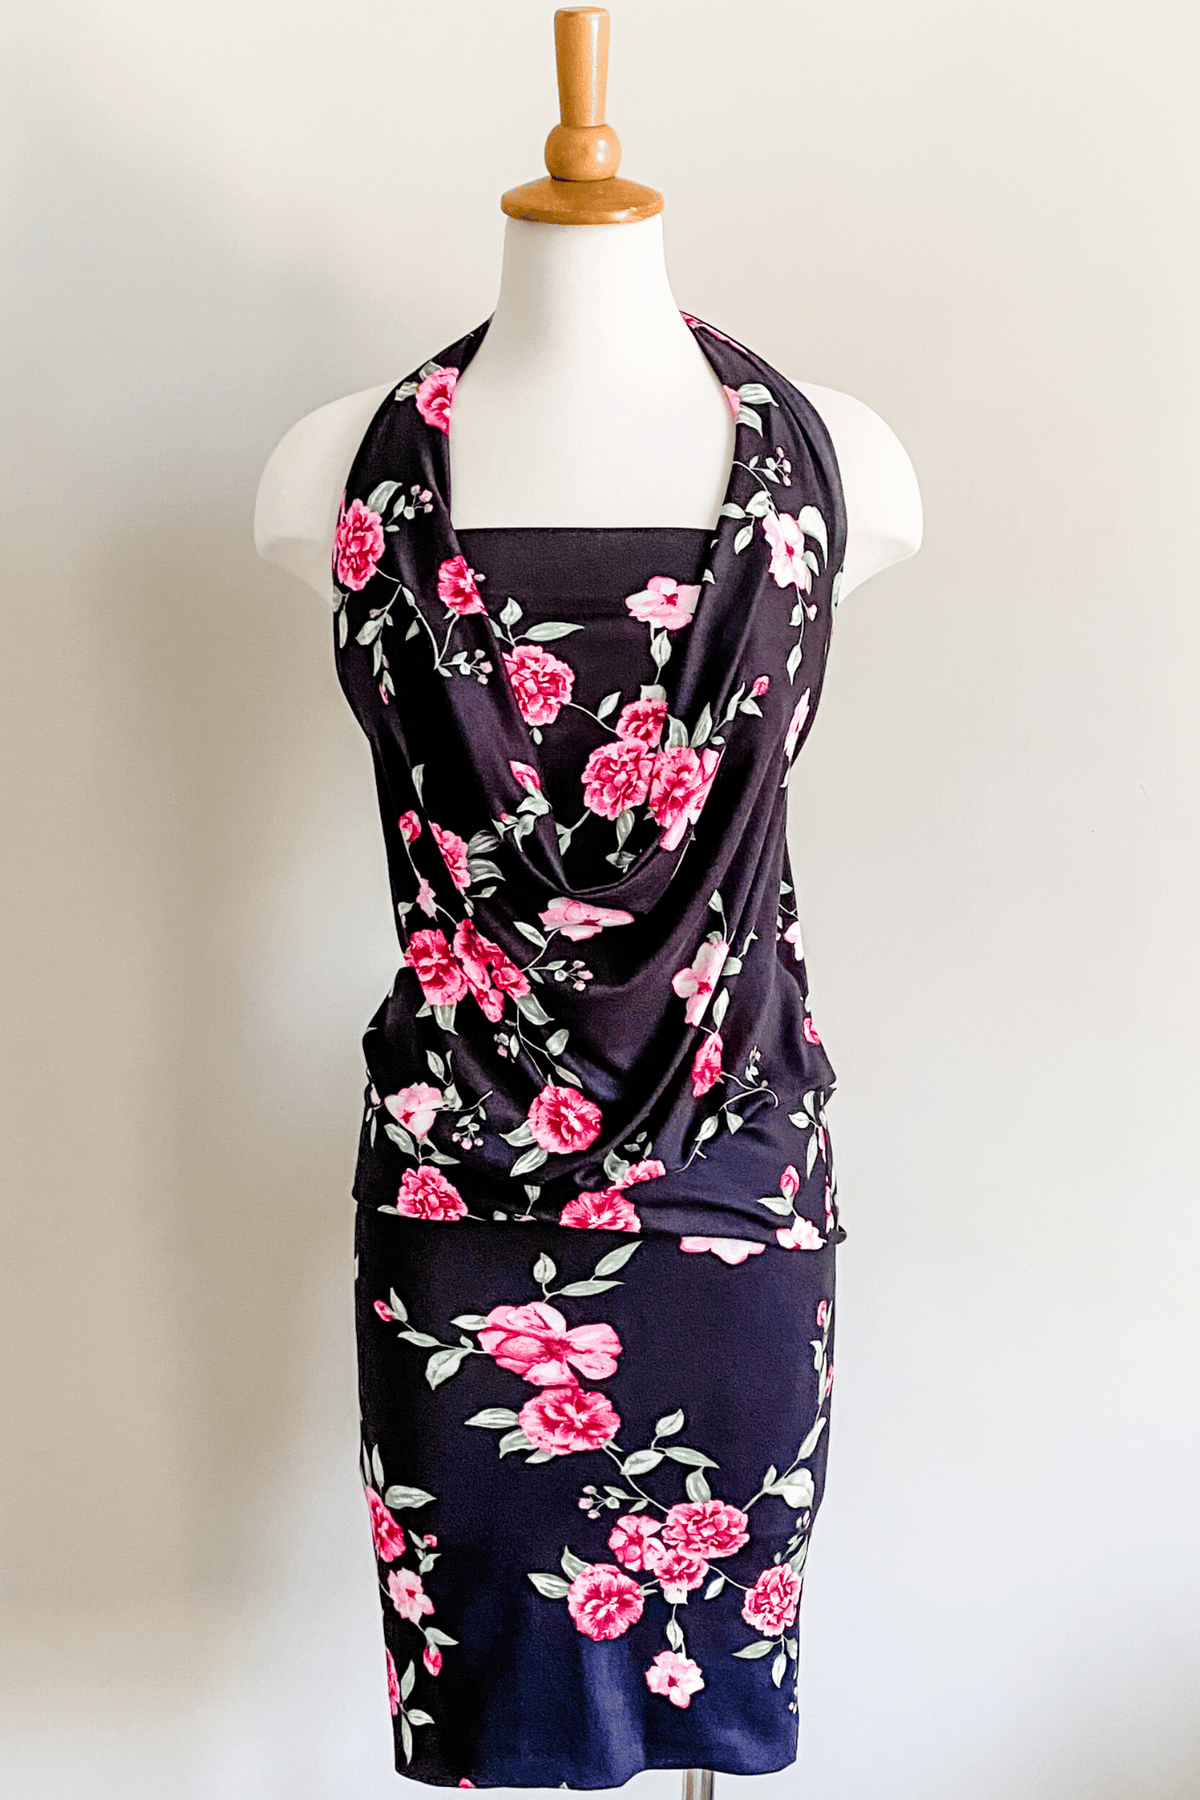 Diane Kroe Skort (Black Pink Floral) - Warm Weather Capsule Collection